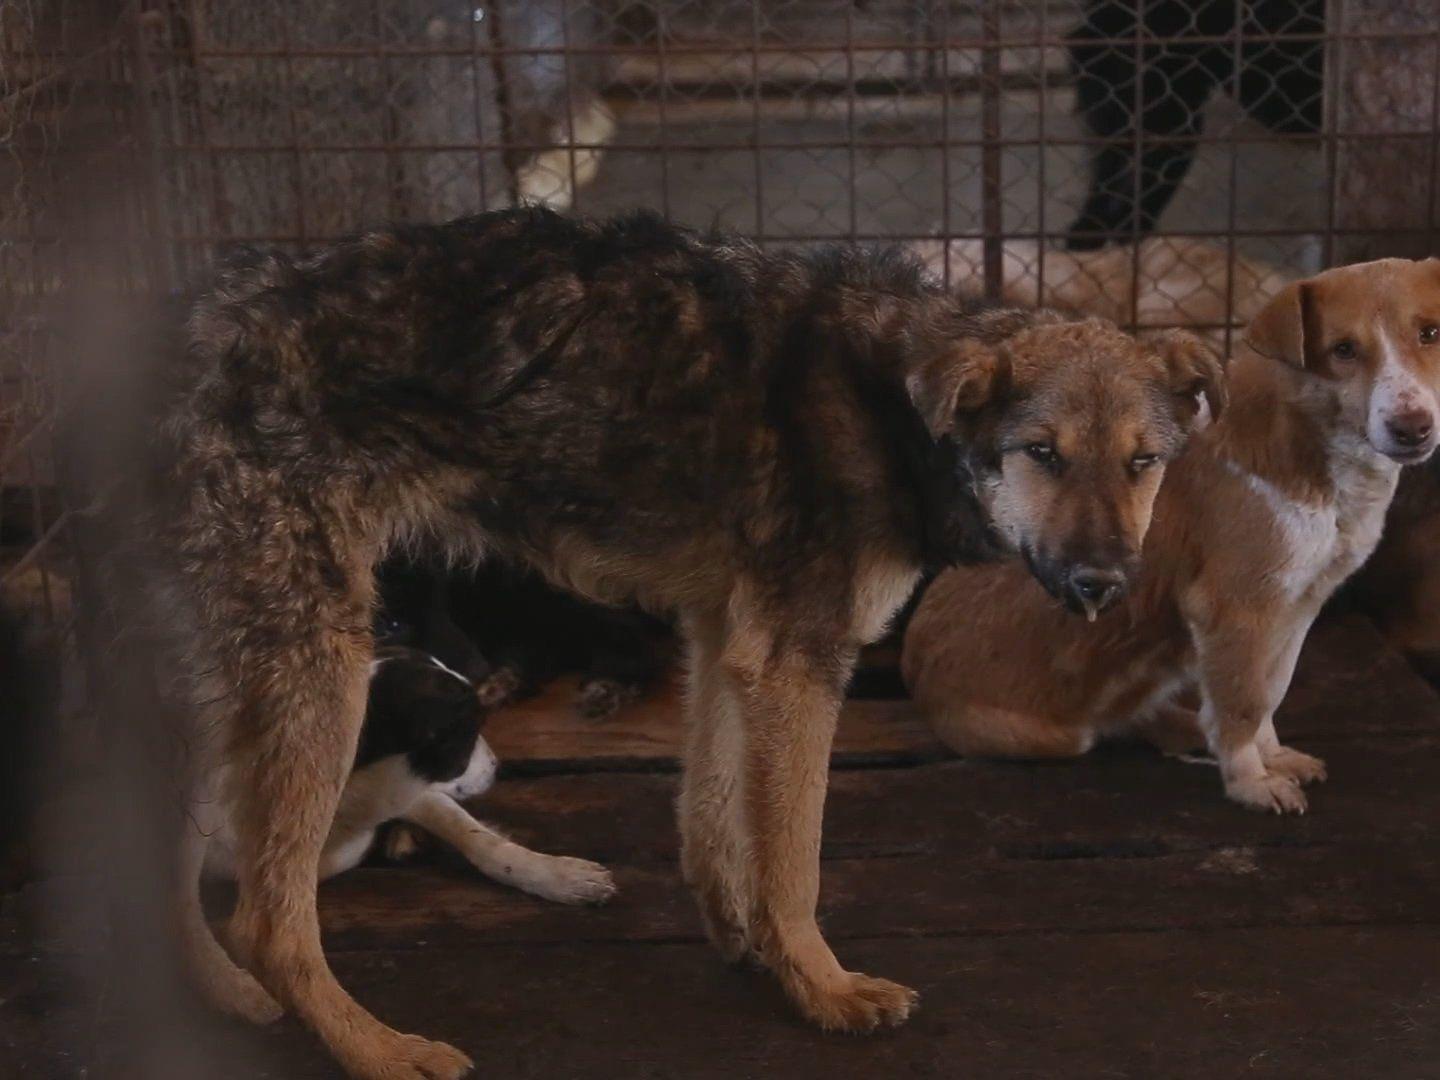 Vier-Pfoten-Video zeigt katastrophale Zustände in rumänischen Tierheimen.